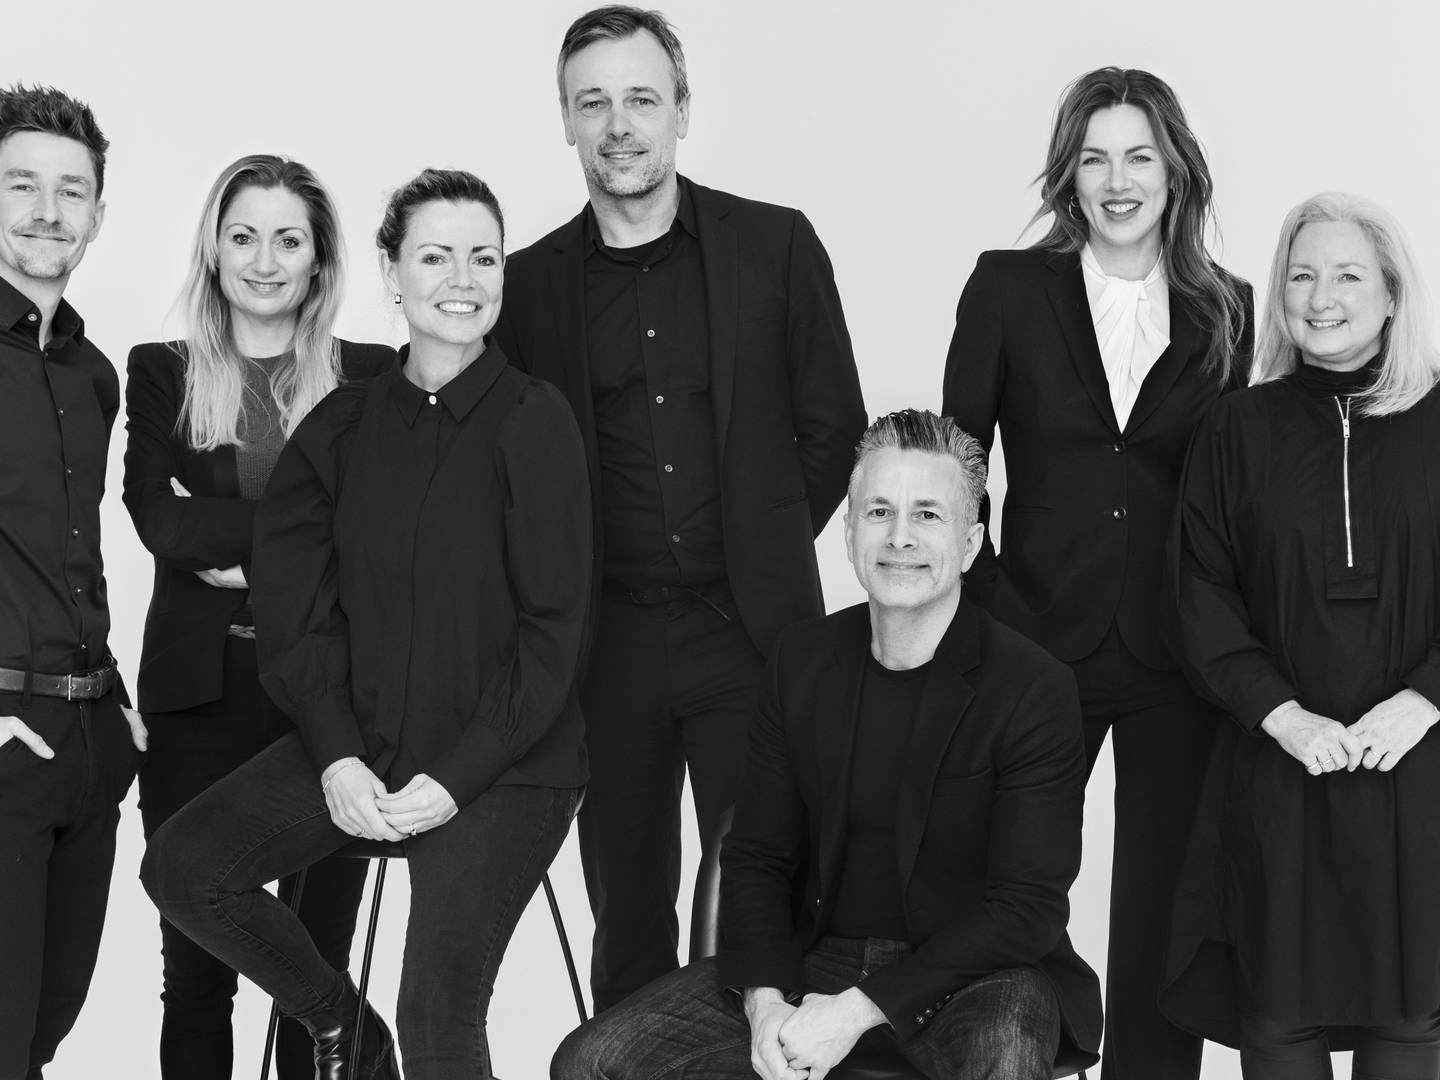 Blus ledelse samt nyudnævnt kreativ chef Henrik Aggerholm (yderst til venstre) og ny faktachef fra DR Anders Thomsen (siddende til højre). | Foto: Isak Hoffmeyer/PR Blu